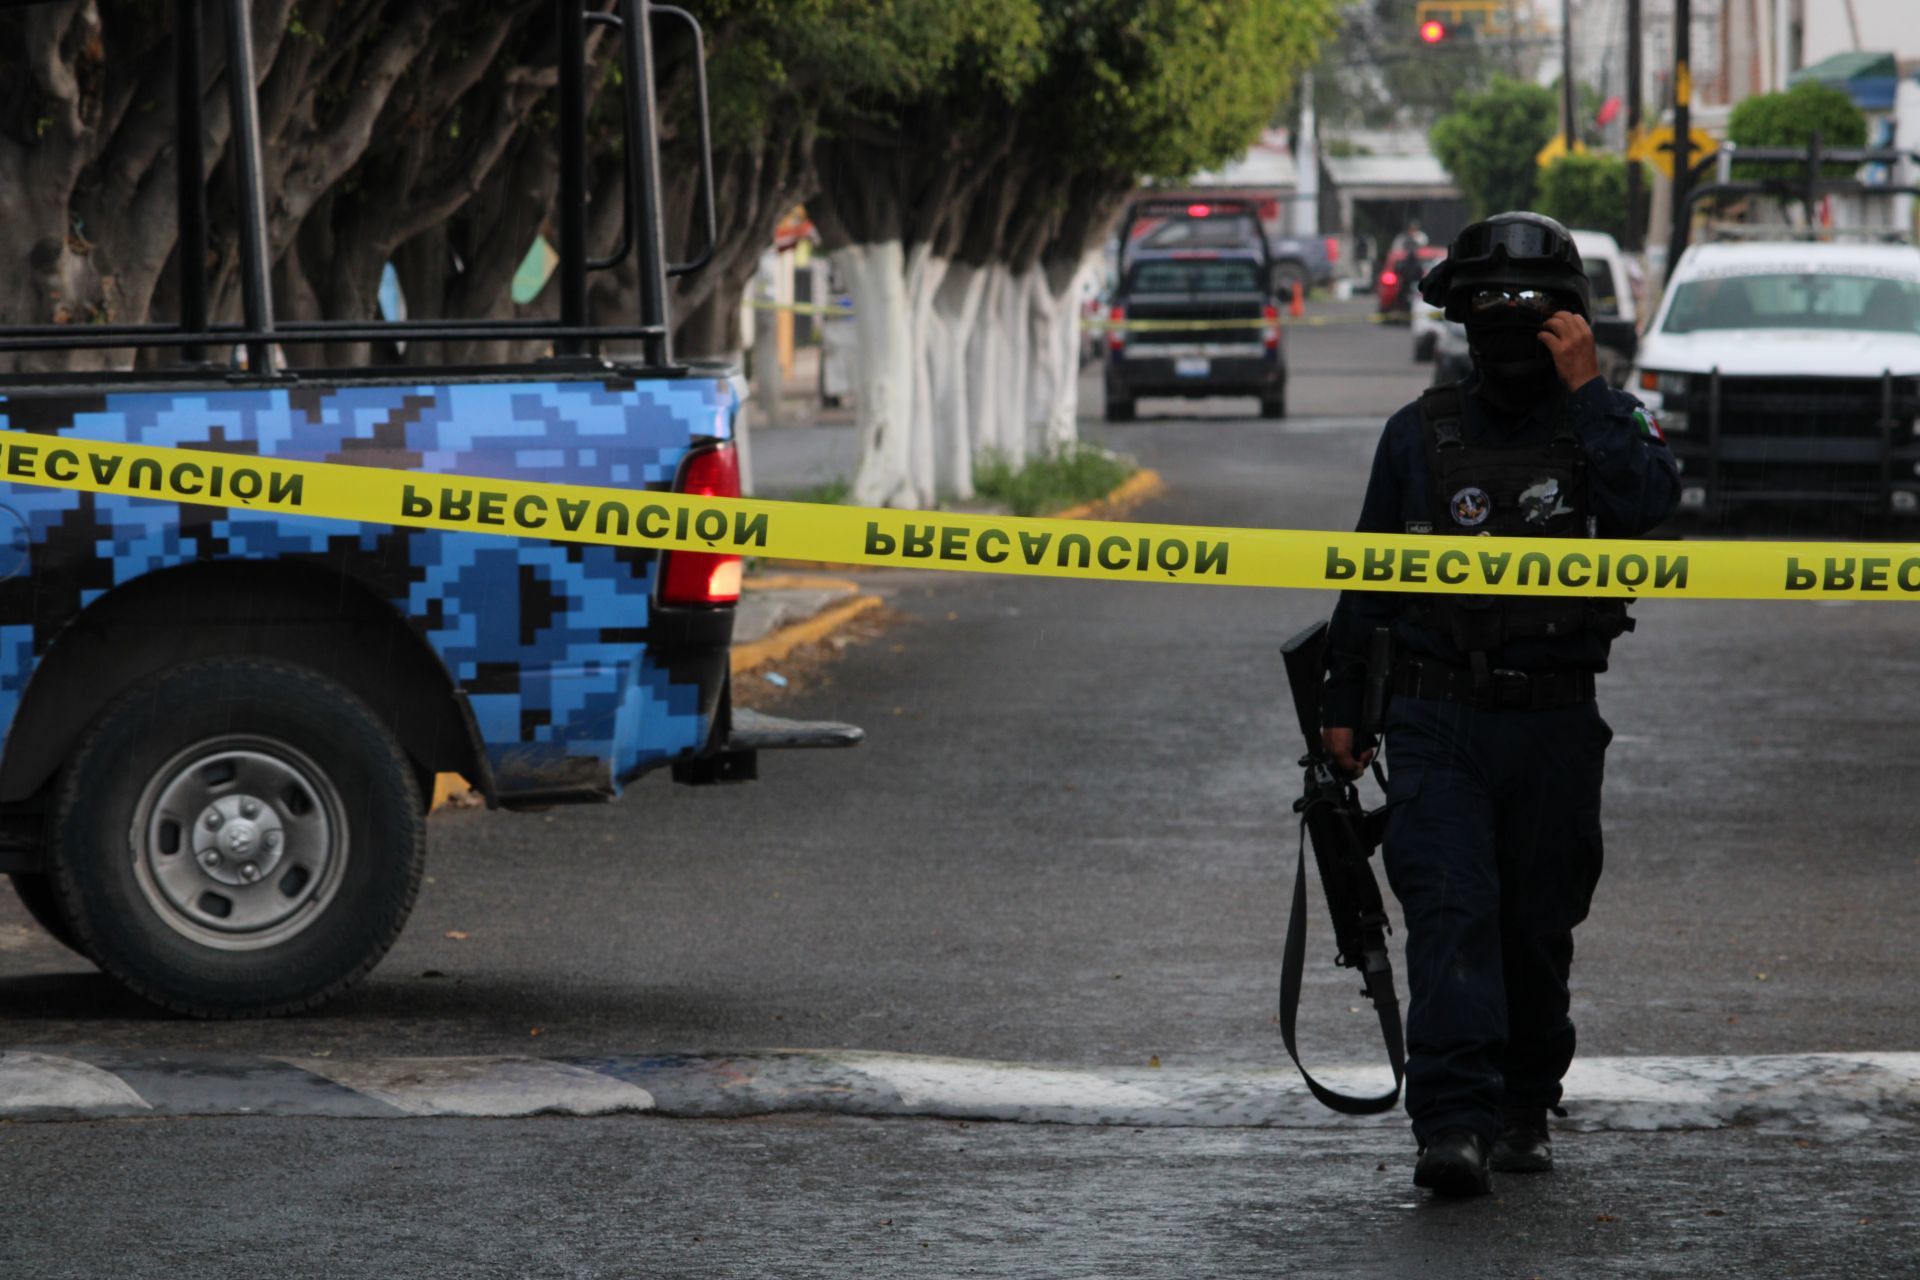 Mueren policías en ataques en Guanajuato - Página 2 EUXHLHXOONBANIHDIIZ254GBXI